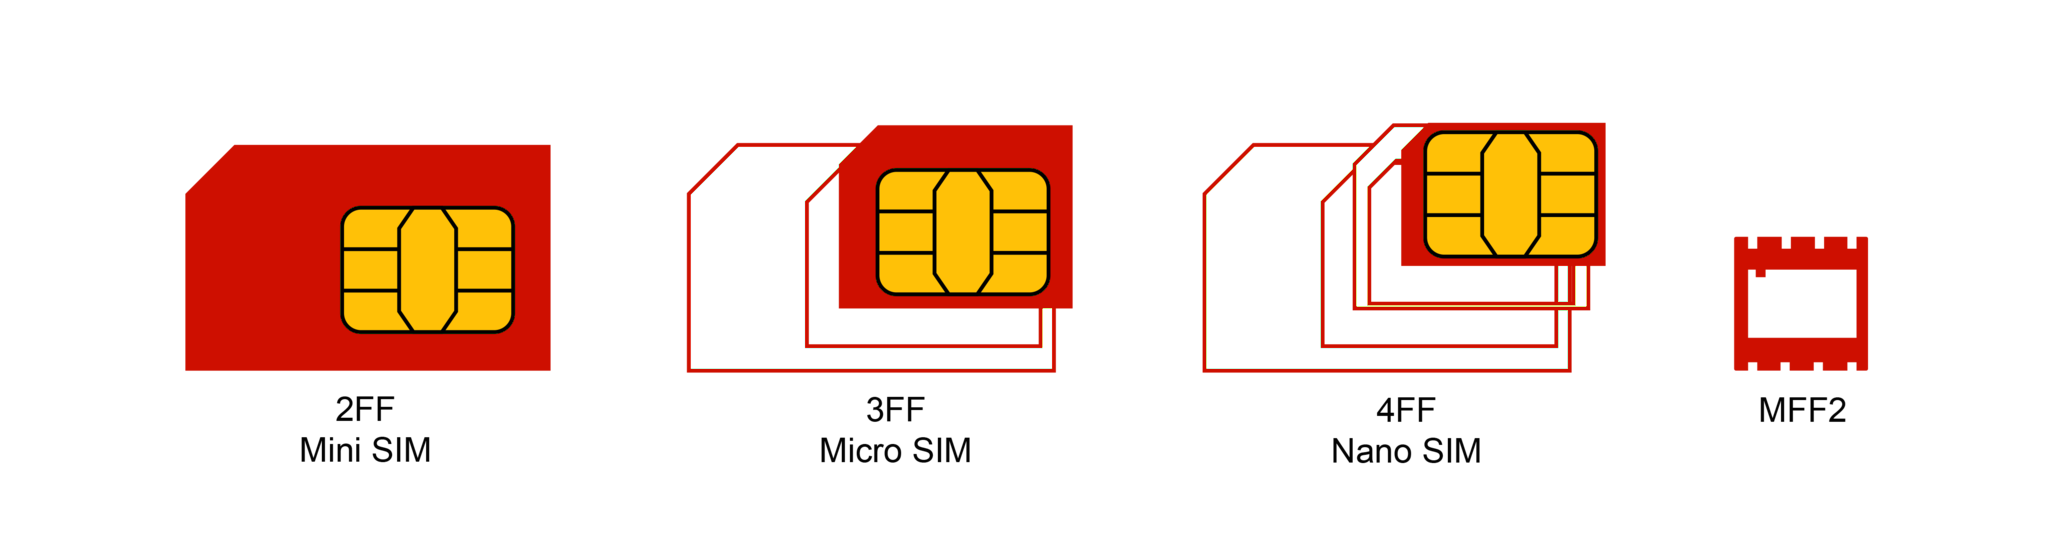 SIM Card Form Factors